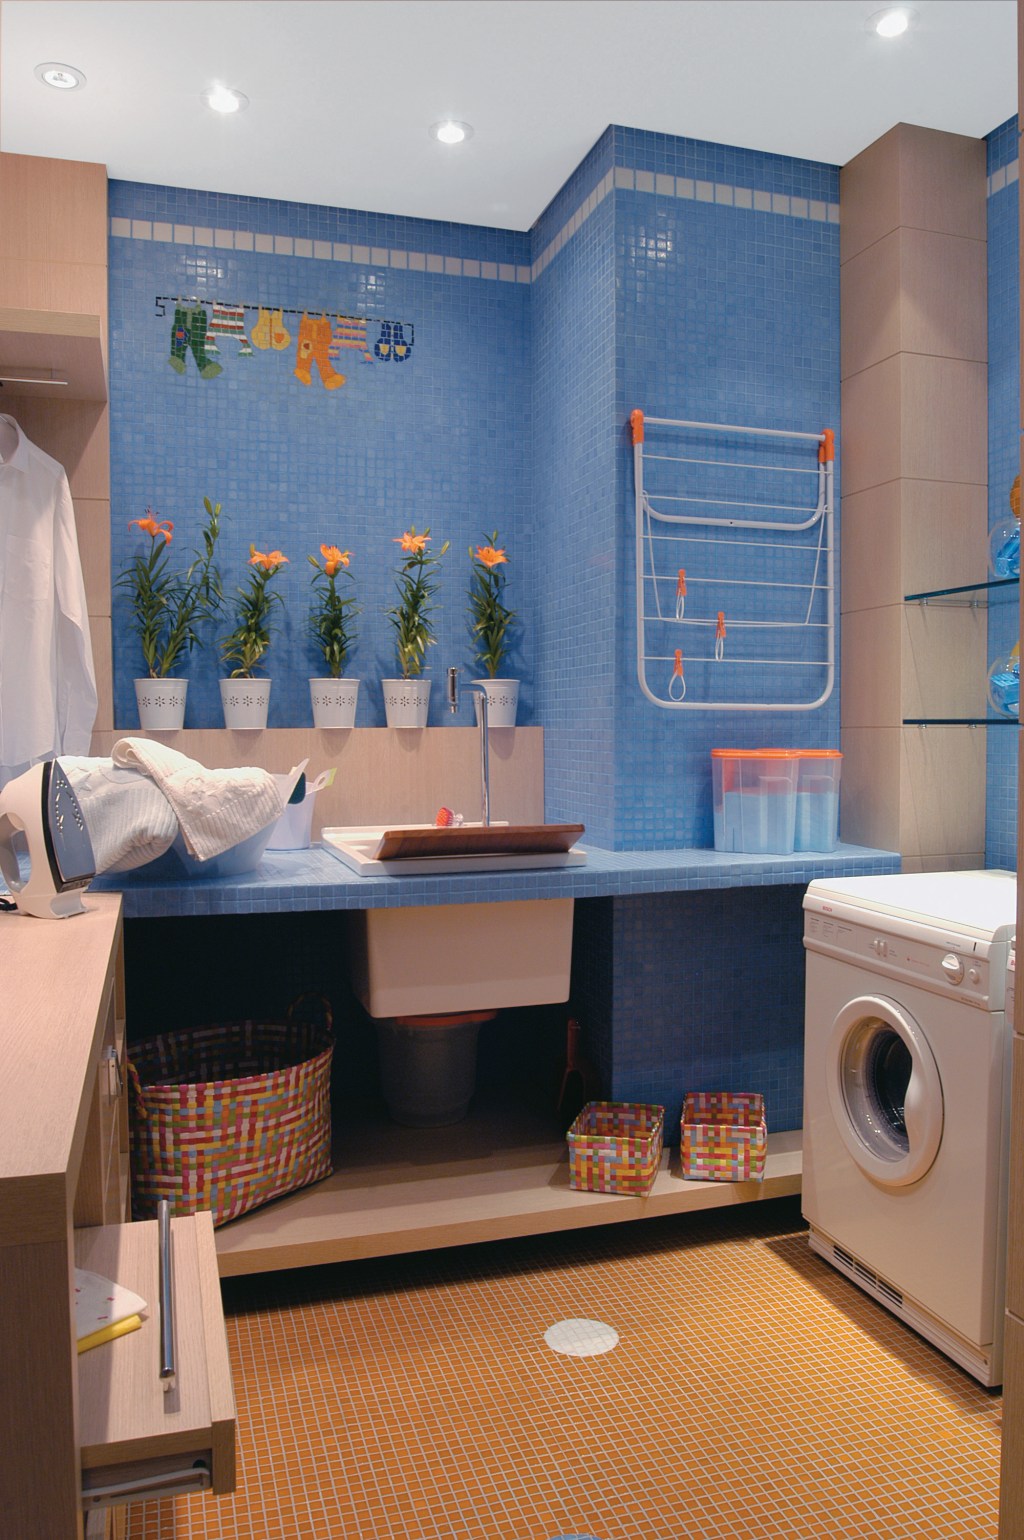 Nestes ambientes, azulejos, cores, plantas e tapetes ajudam a trazem personalidade à lavanderia e mostram que o espaço pode, sim, ser decorado de várias formas diferentes. Confira